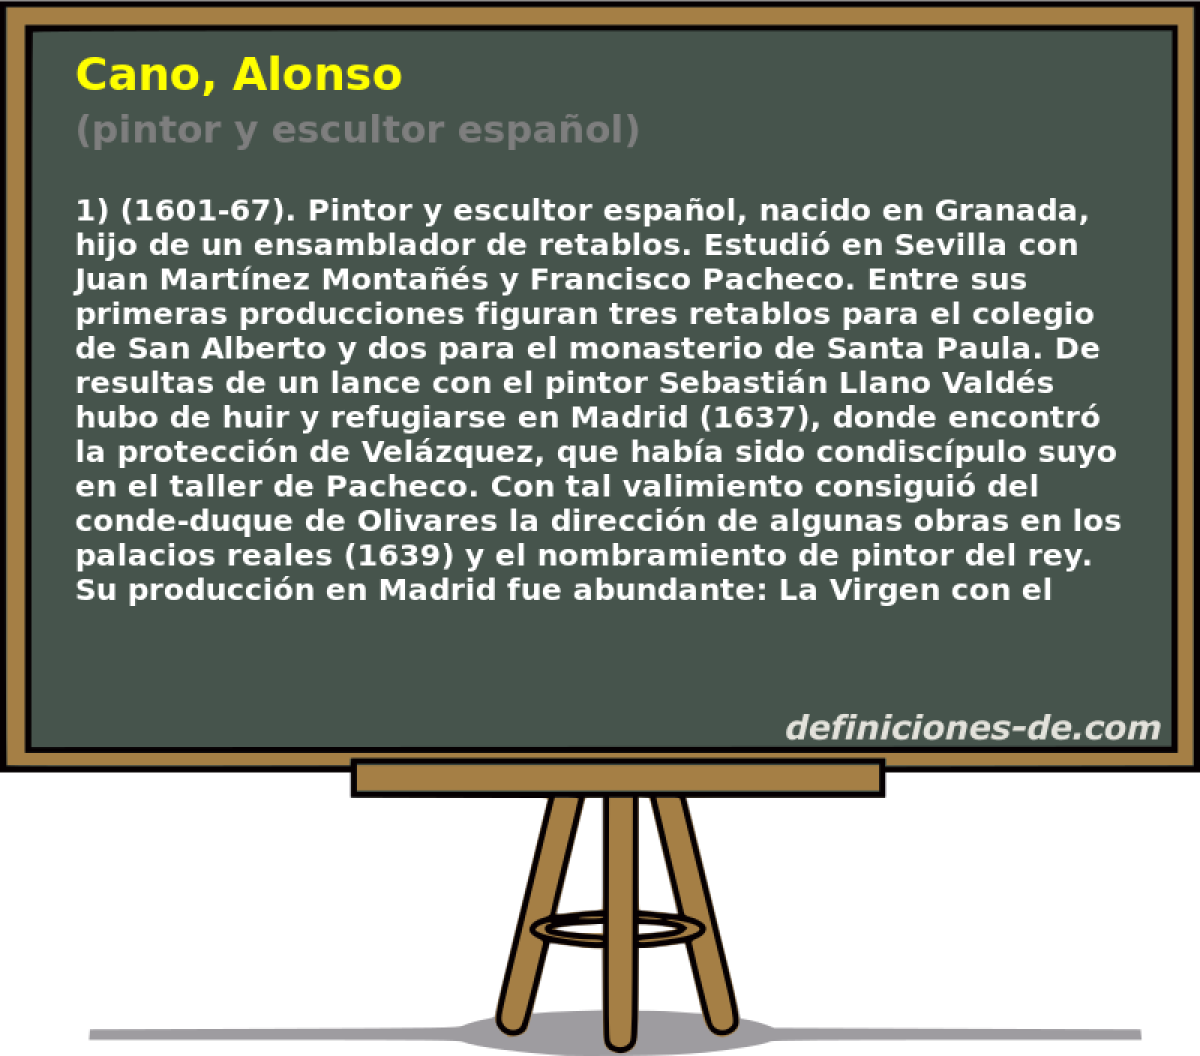 Cano, Alonso (pintor y escultor espaol)